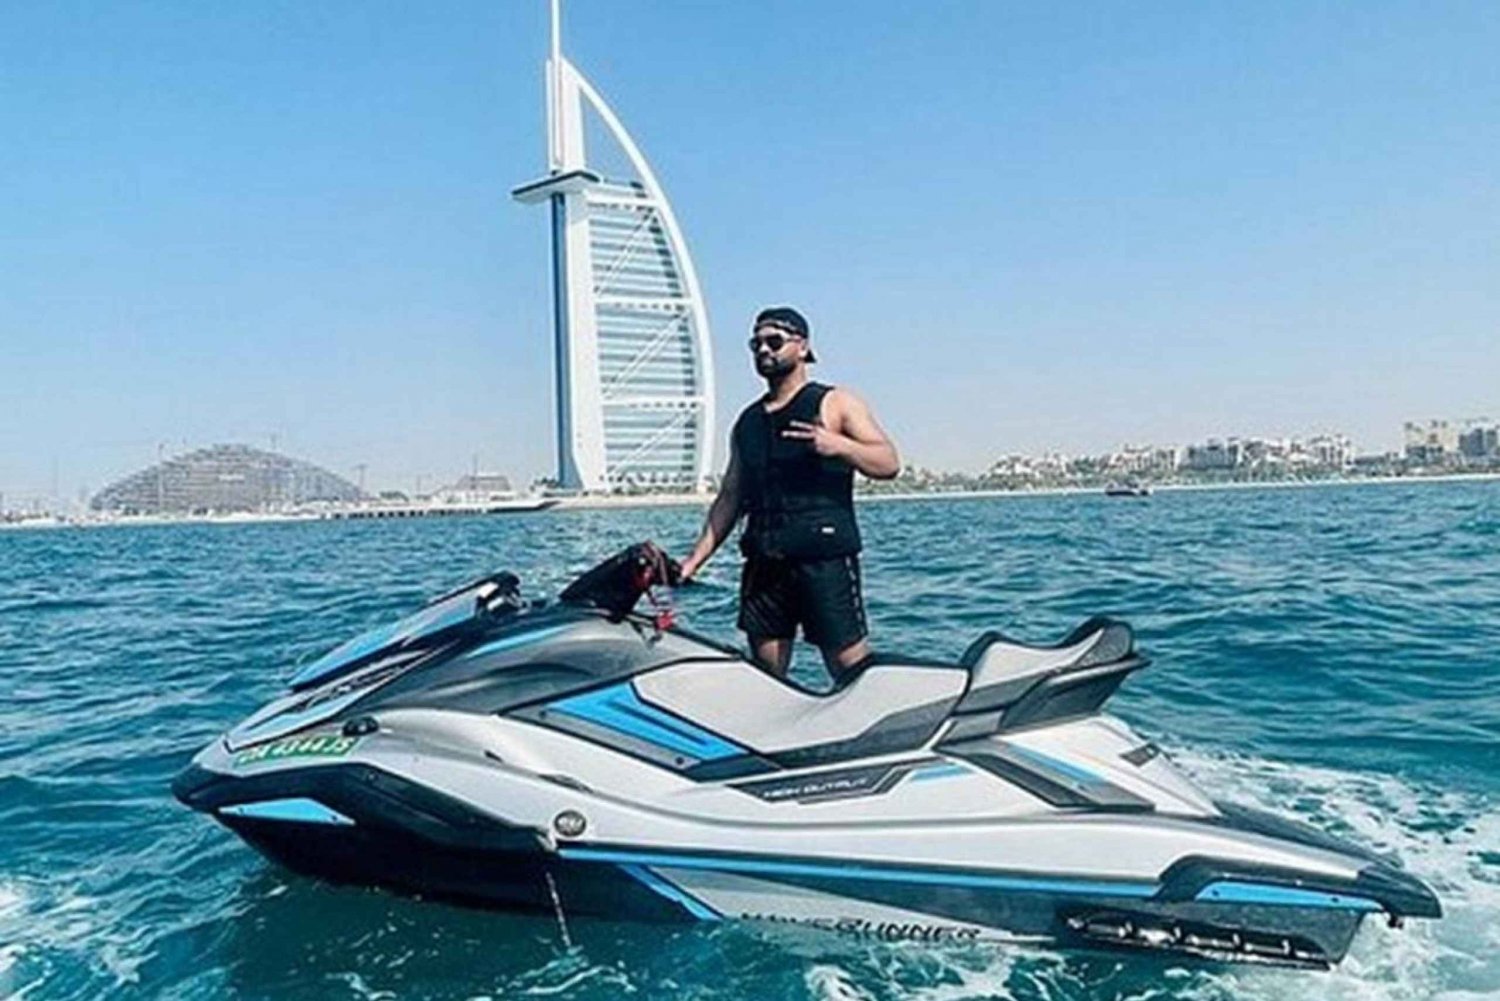 Jumeirah Beachin Jumeirahin rannalla Dubaissa jännittävä vesiskootterin ajelu 2:lle hengelle